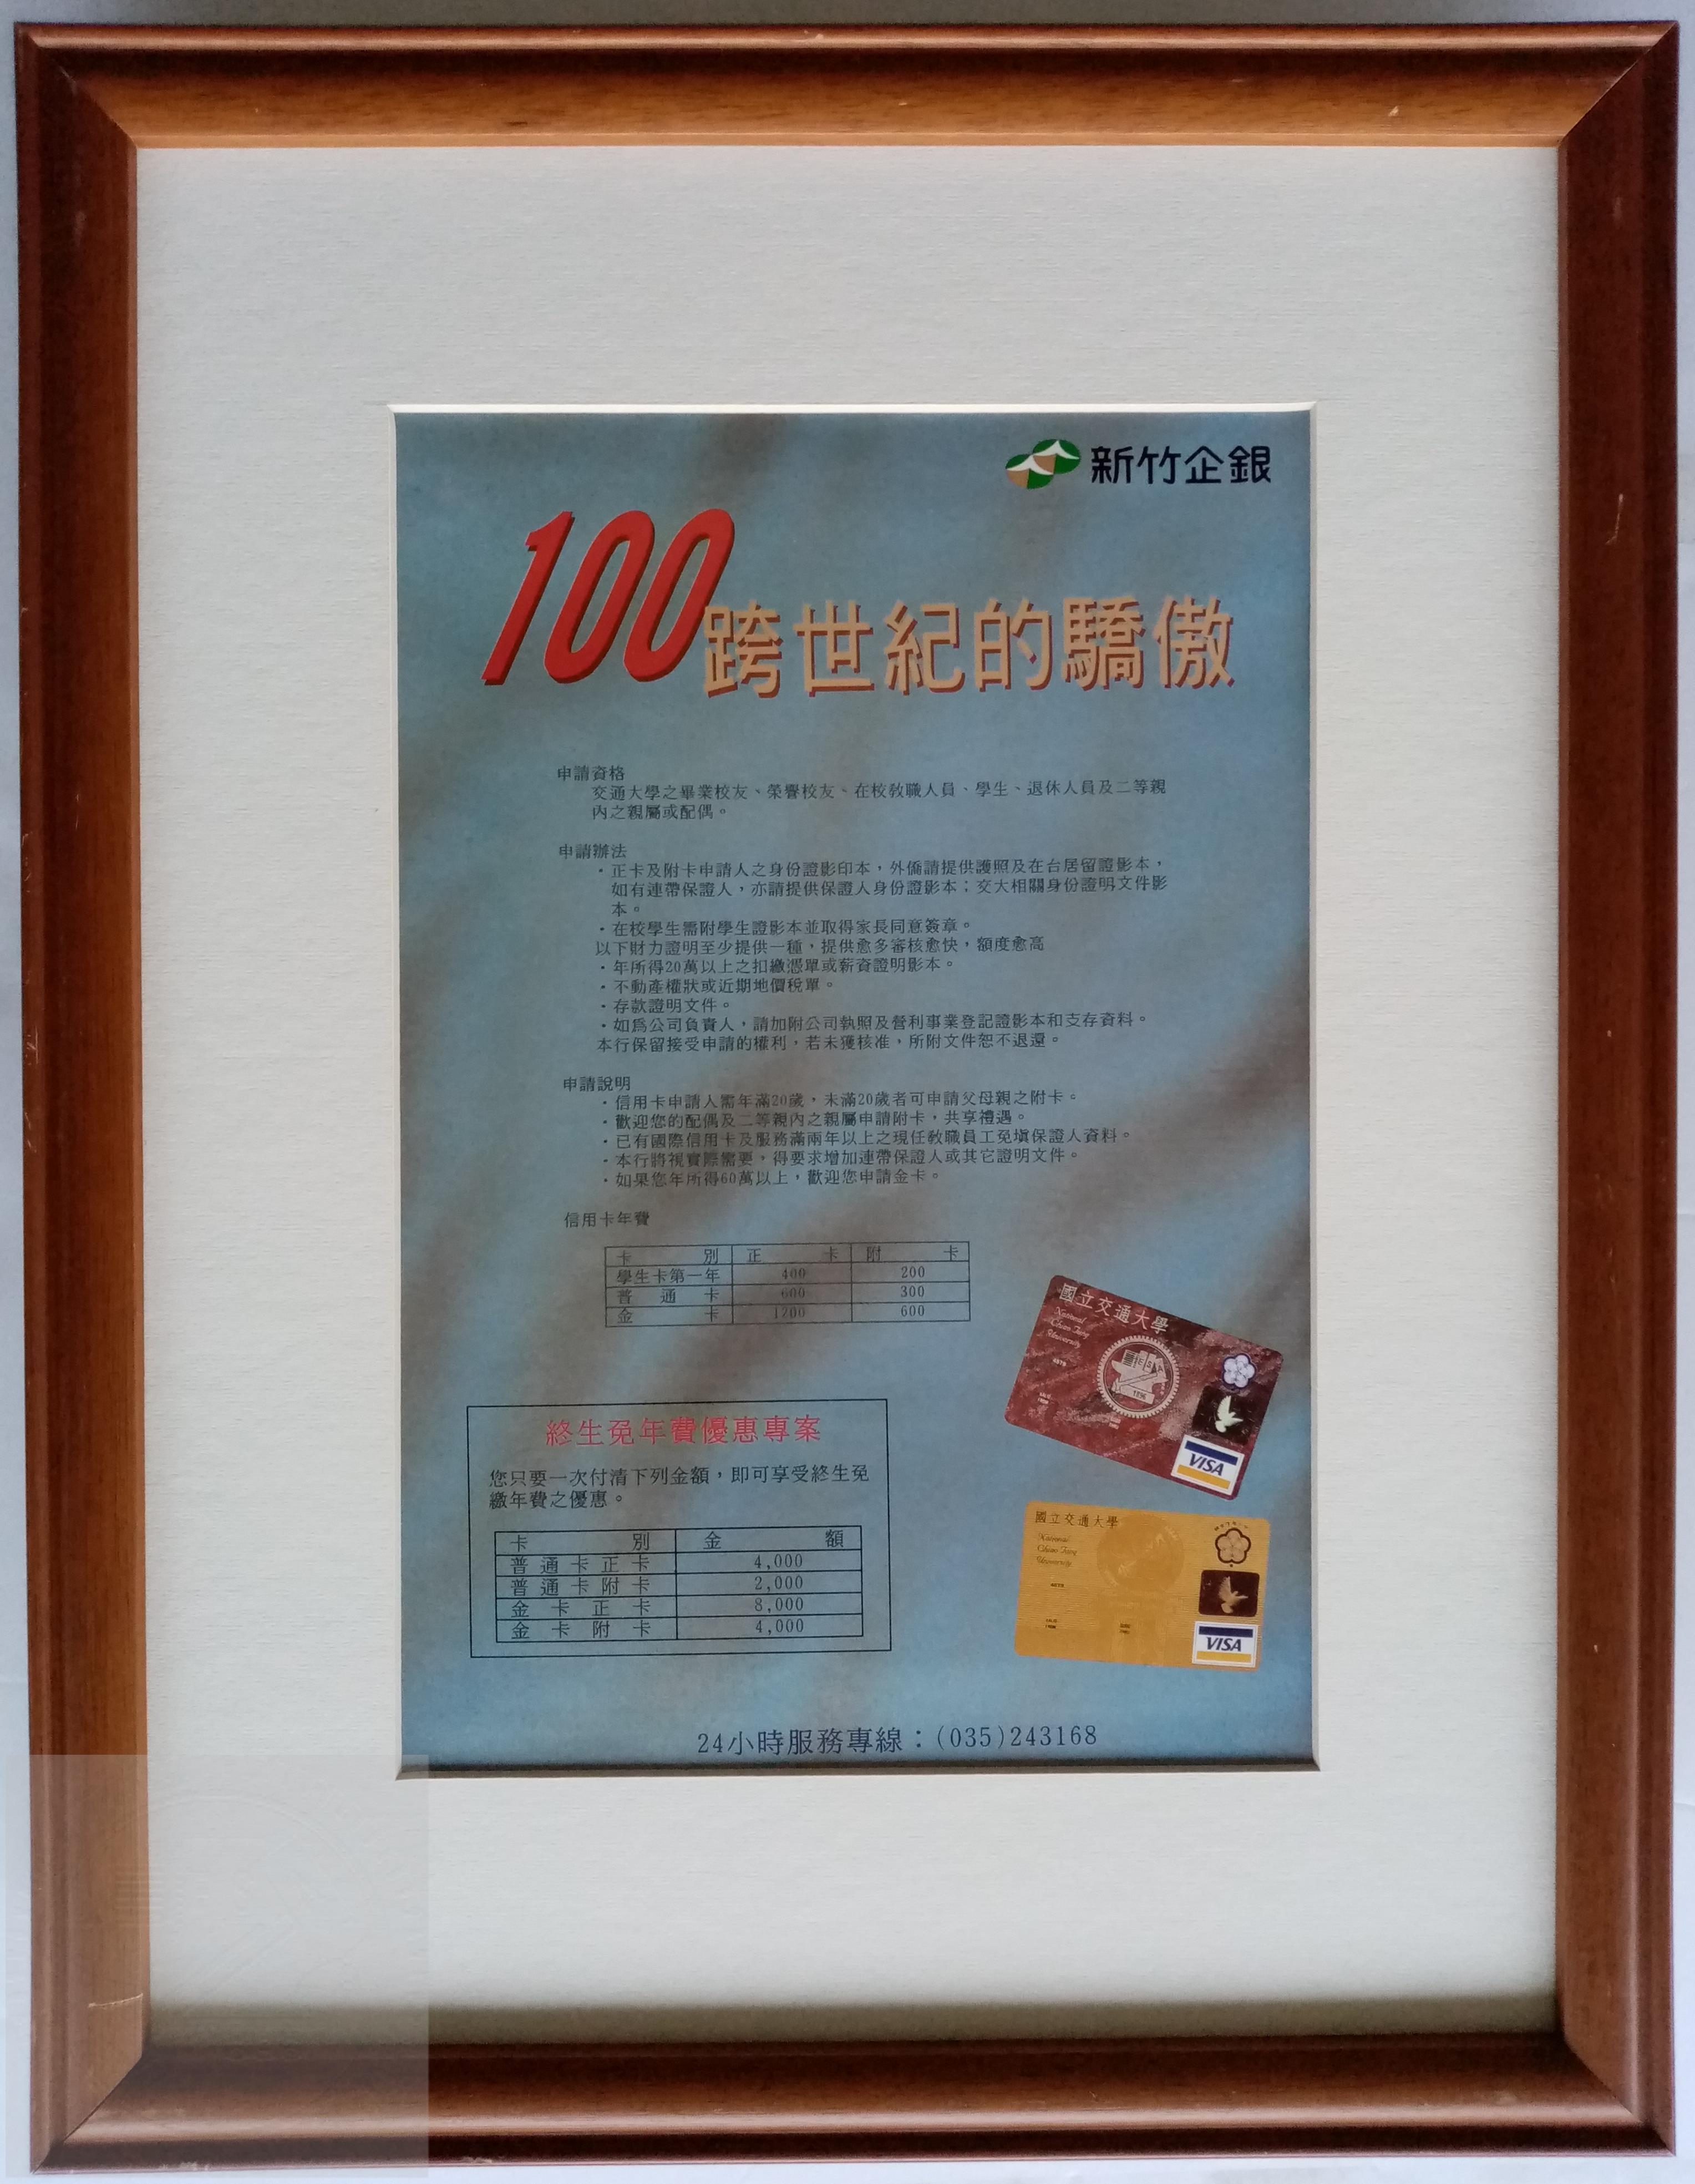 100 跨世紀的驕傲－國立交通大學、新竹企銀信用卡 (海報) 